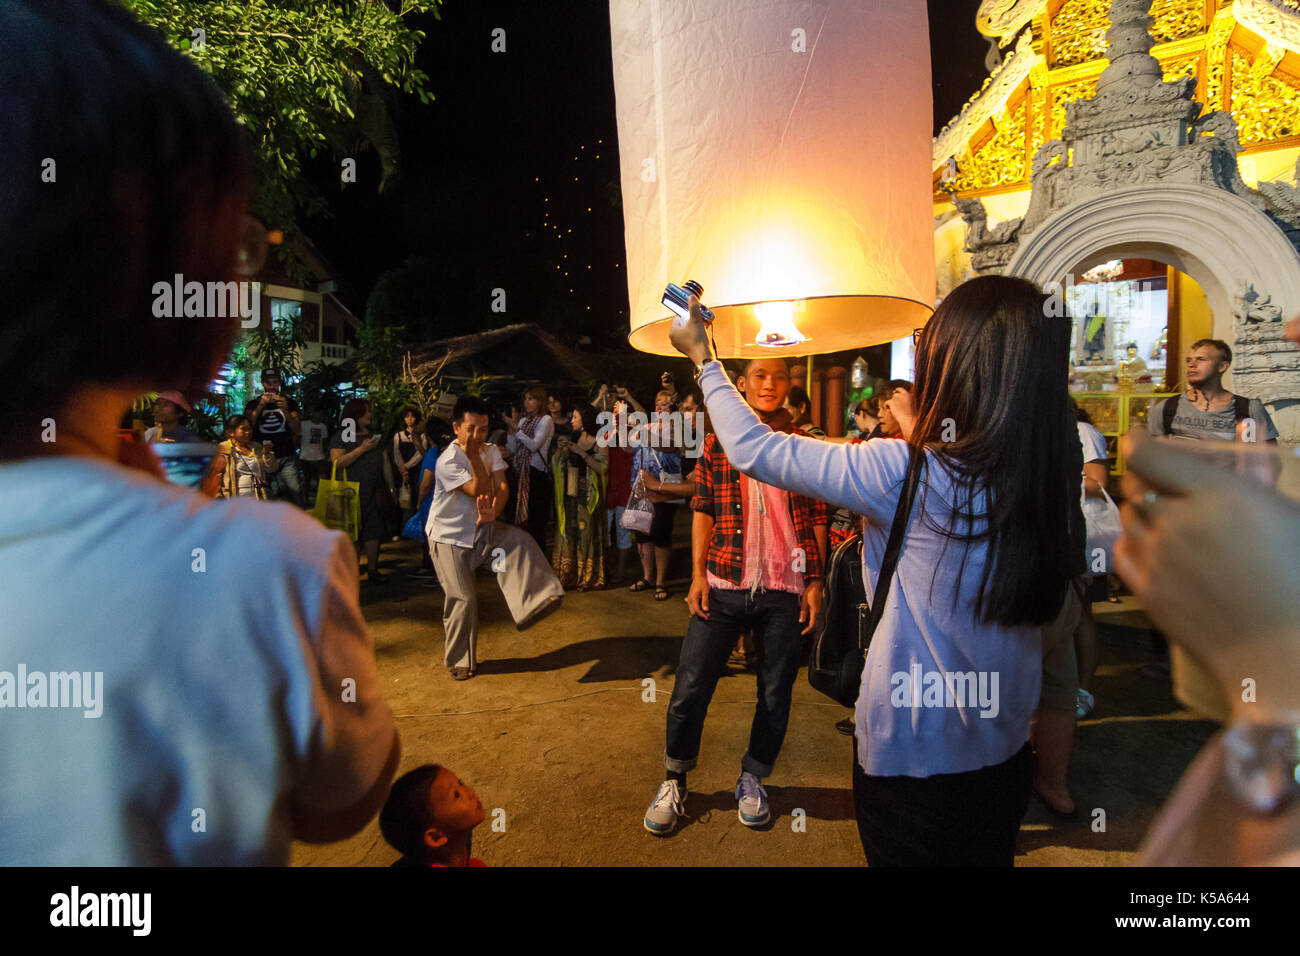 Chiang Mai, Thailandia - 12/30/2015: popolo thai celebrare e rilascio lanterne galleggianti in un tempio buddista per la vigilia di capodanno in Chiang Mai, Thailandia. Foto Stock